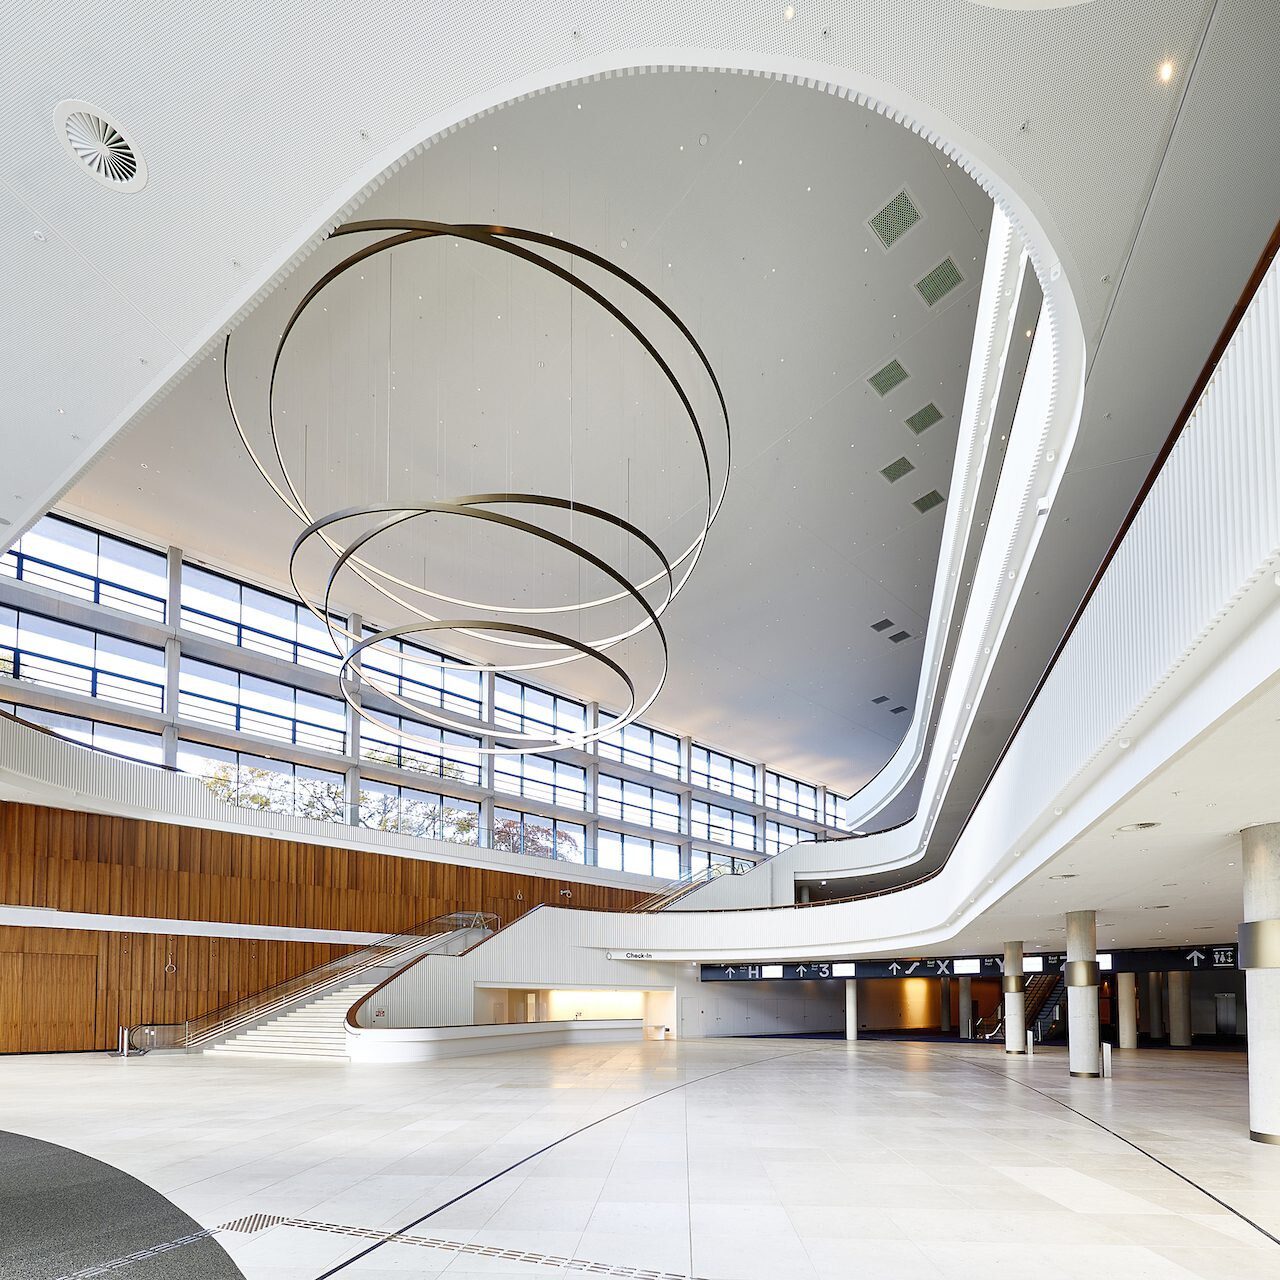 Das neu gebaute Foyer bildet das eindrucksvolle Herzstück des sanierten CCH. Im Zentrum der 4-geschossigen Halle befindet sich eine skulpturale Pendelleuchte. (Foto: Knauf / Dirk Masbaum)